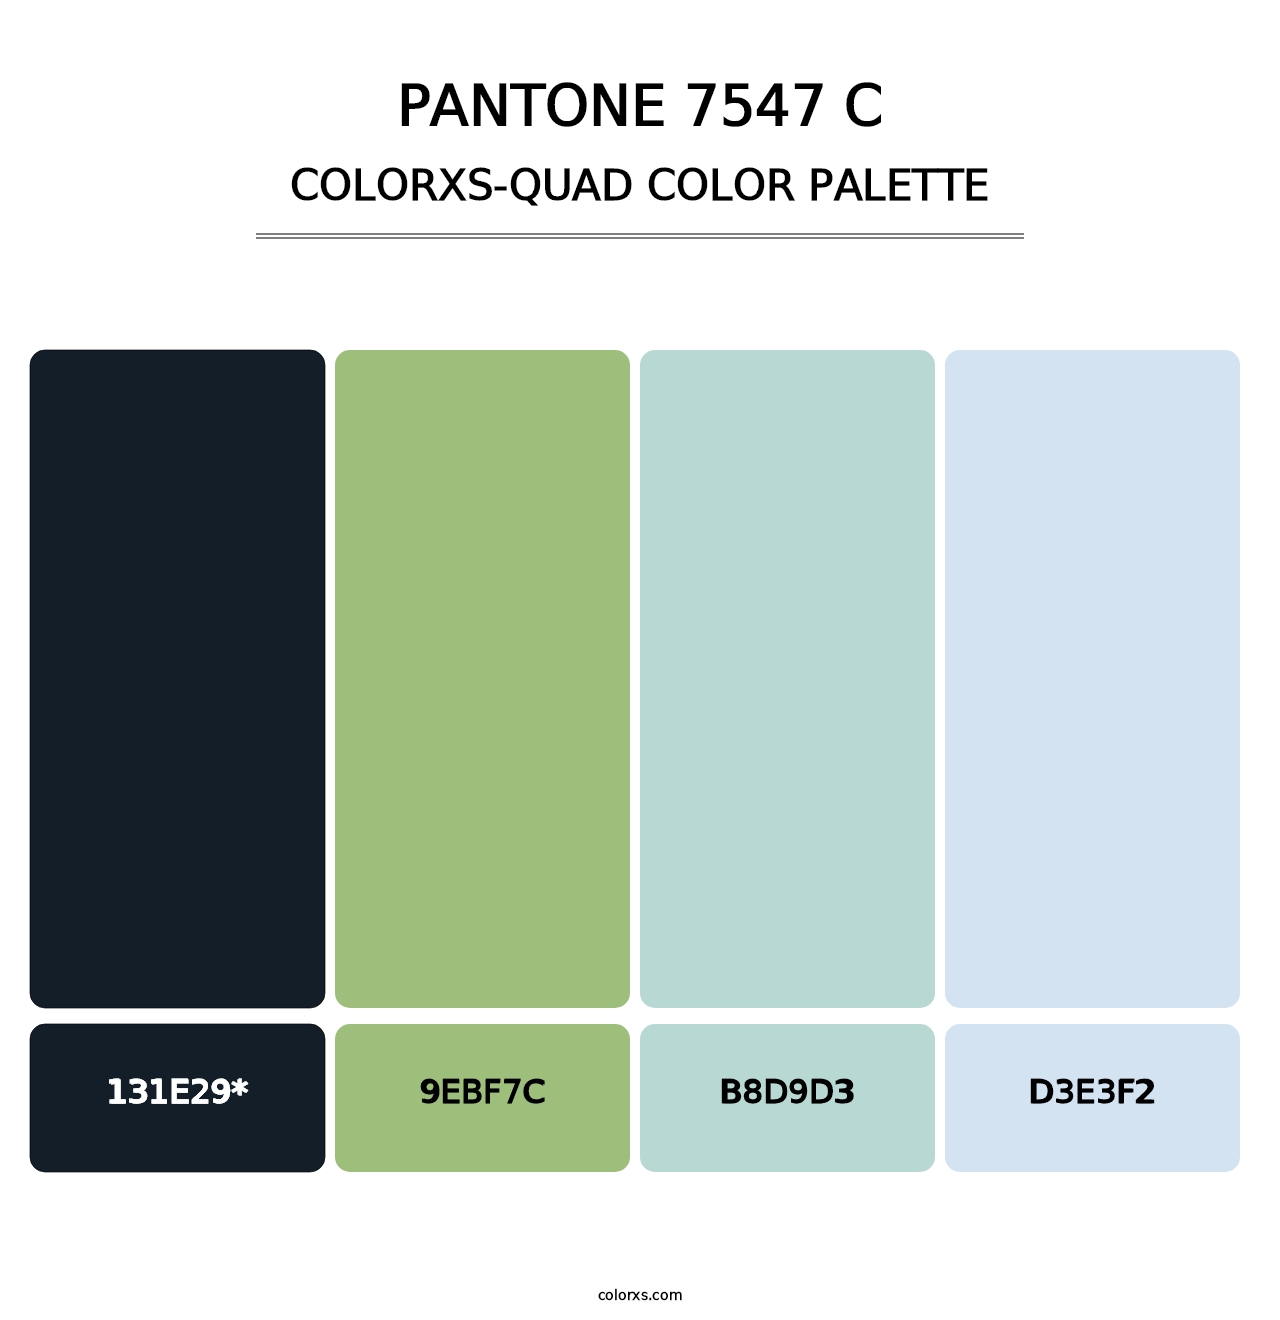 PANTONE 7547 C - Colorxs Quad Palette